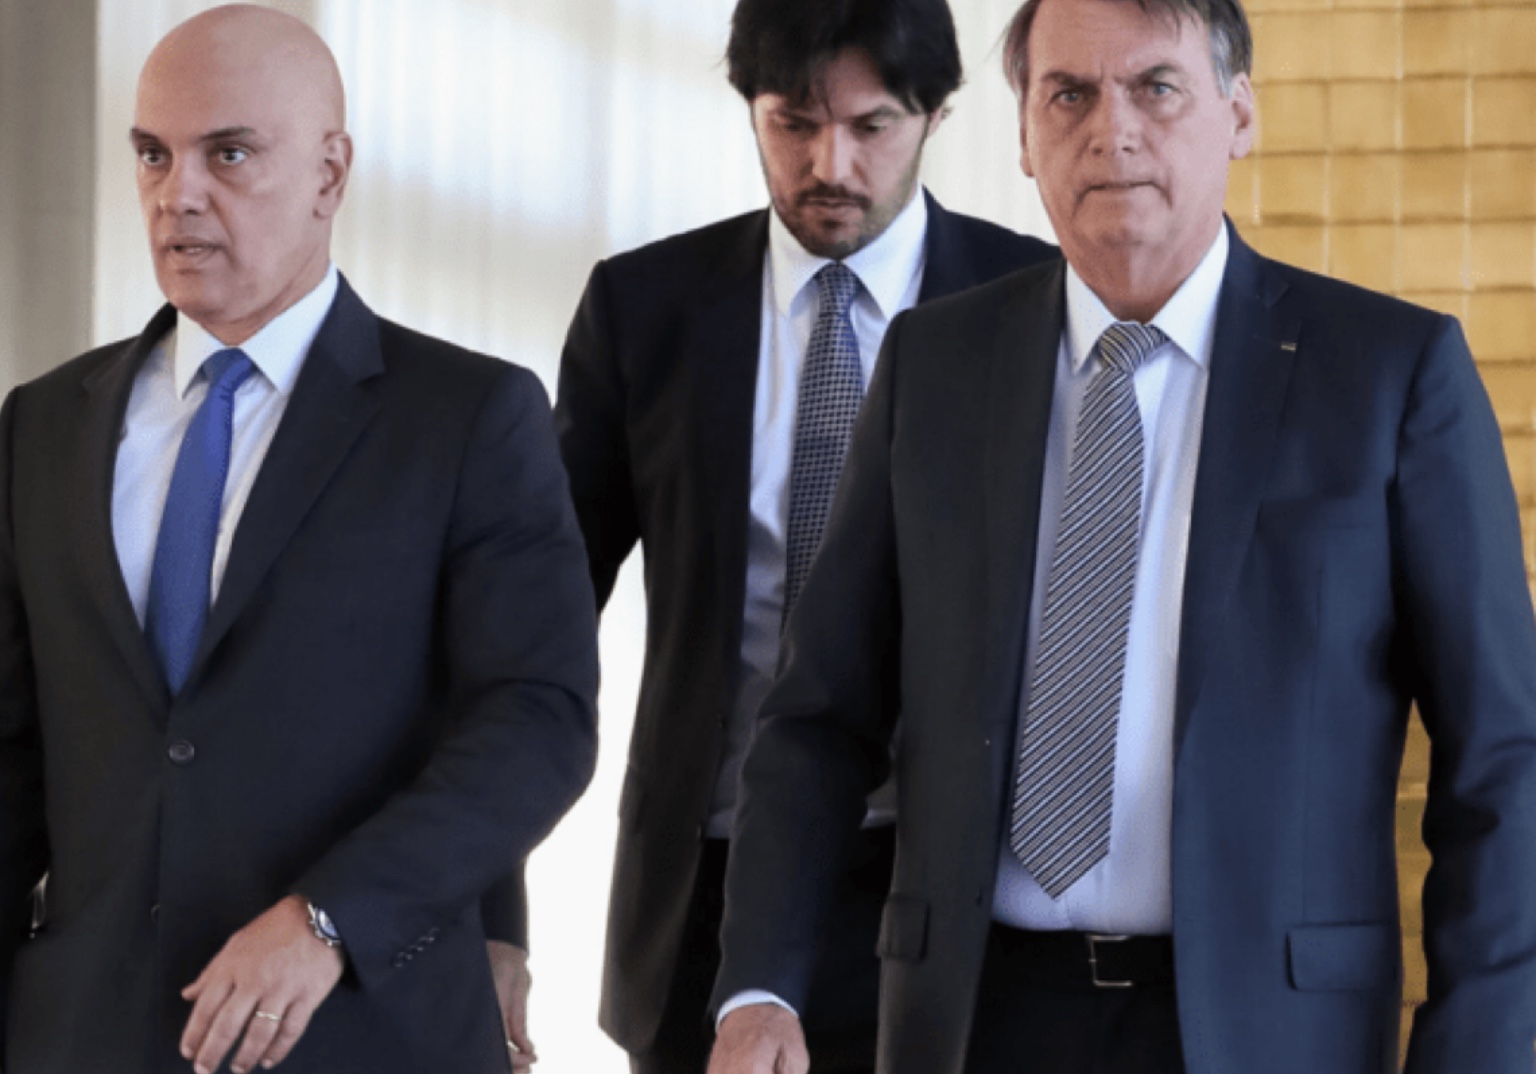 Bem-vindo à vida civil, Bolsonaro. O marco começa hoje